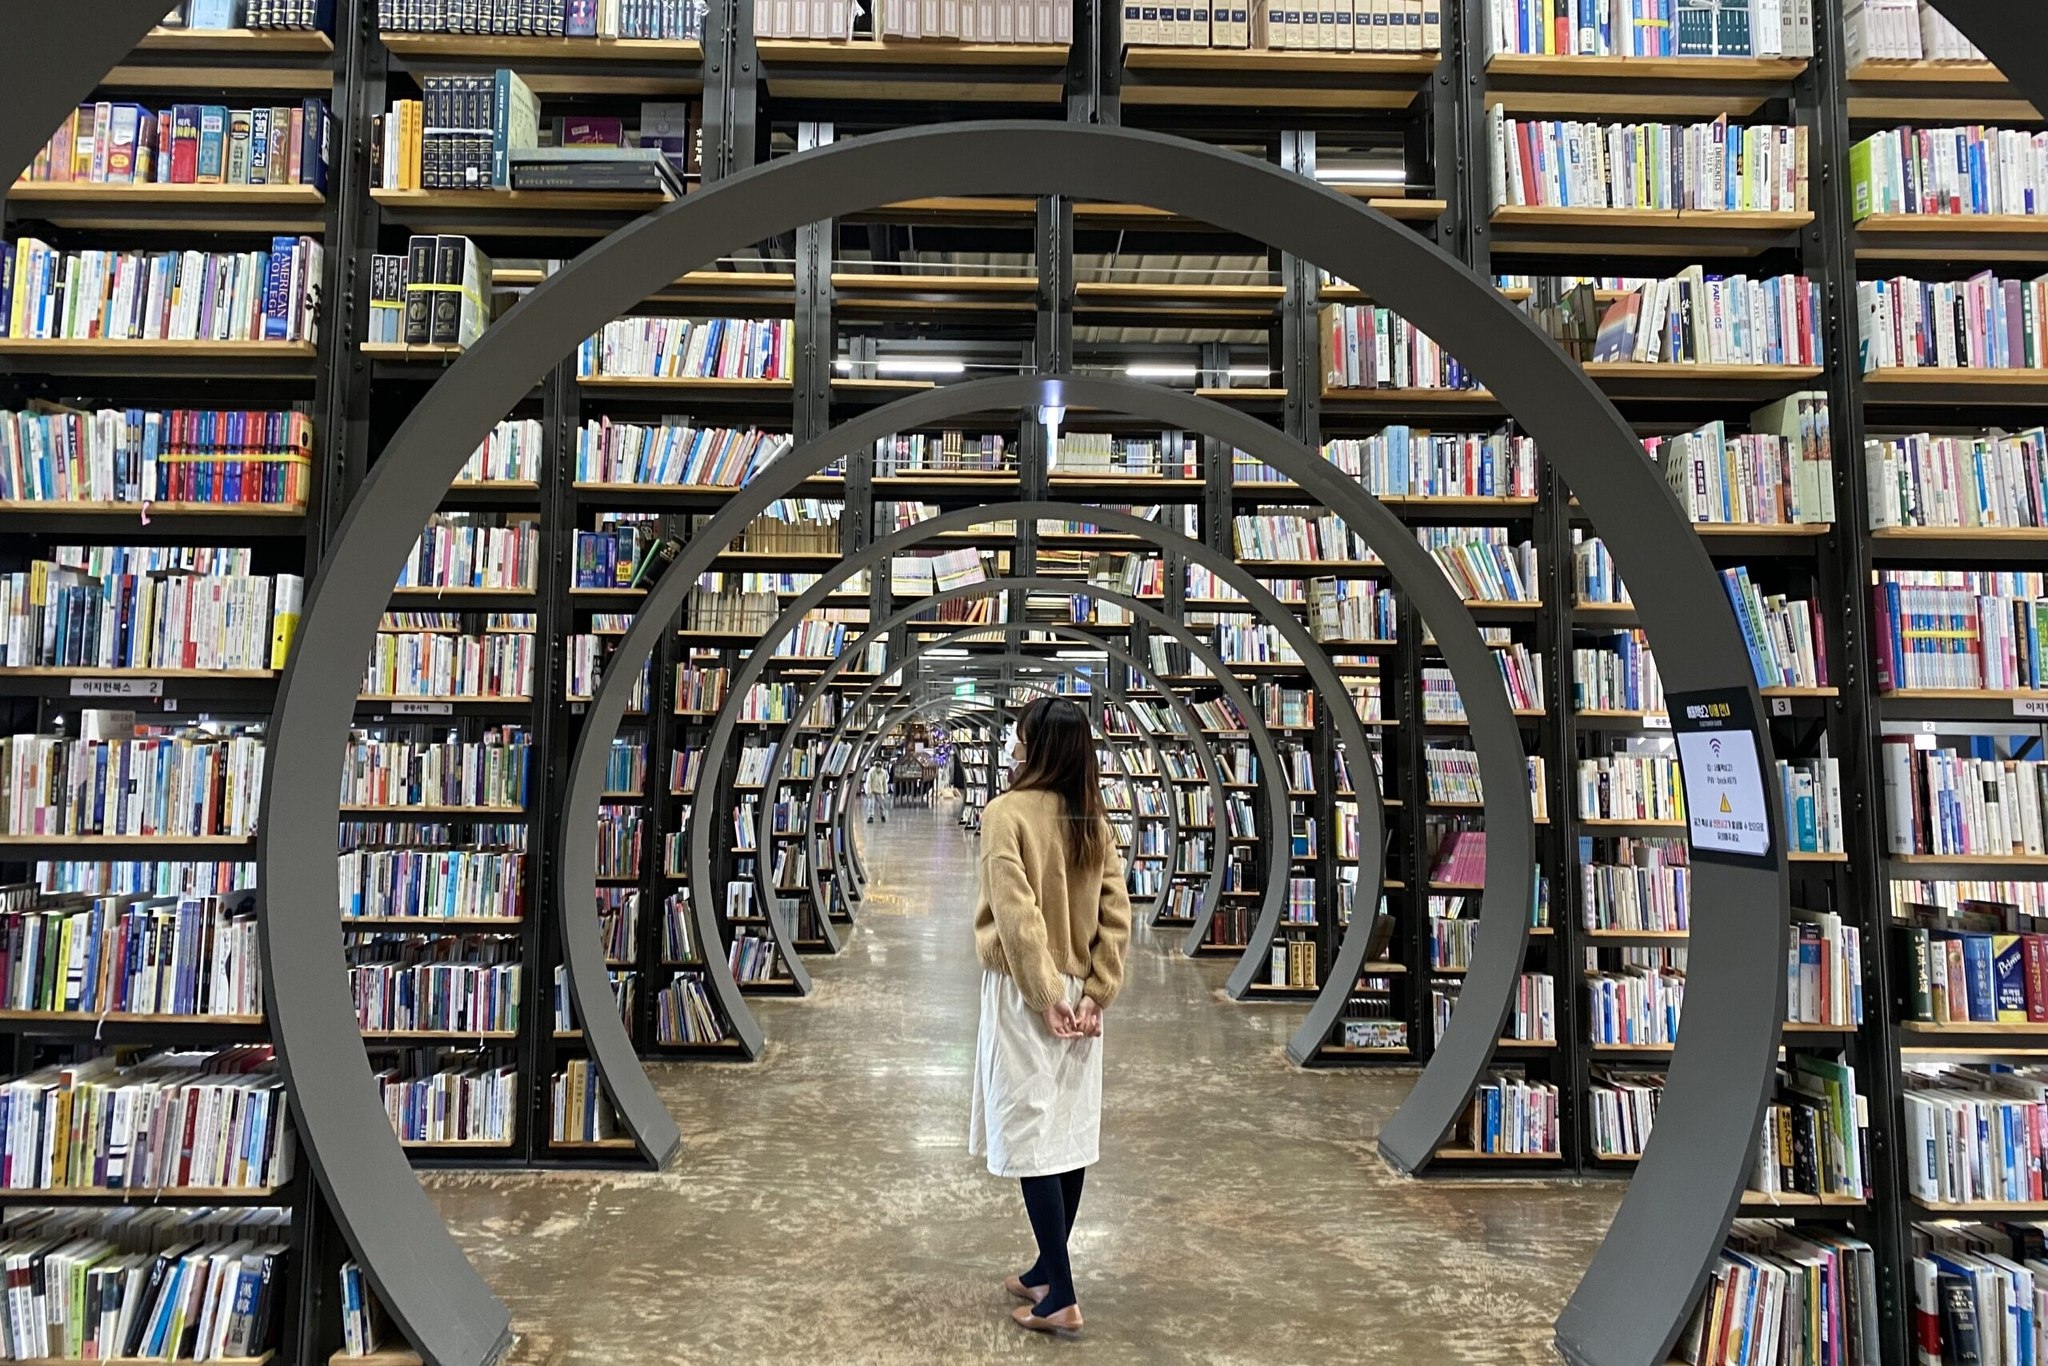 Kho tàng sách khổng lồ tại Seoul Books Bogo. Ảnh: venesis.media